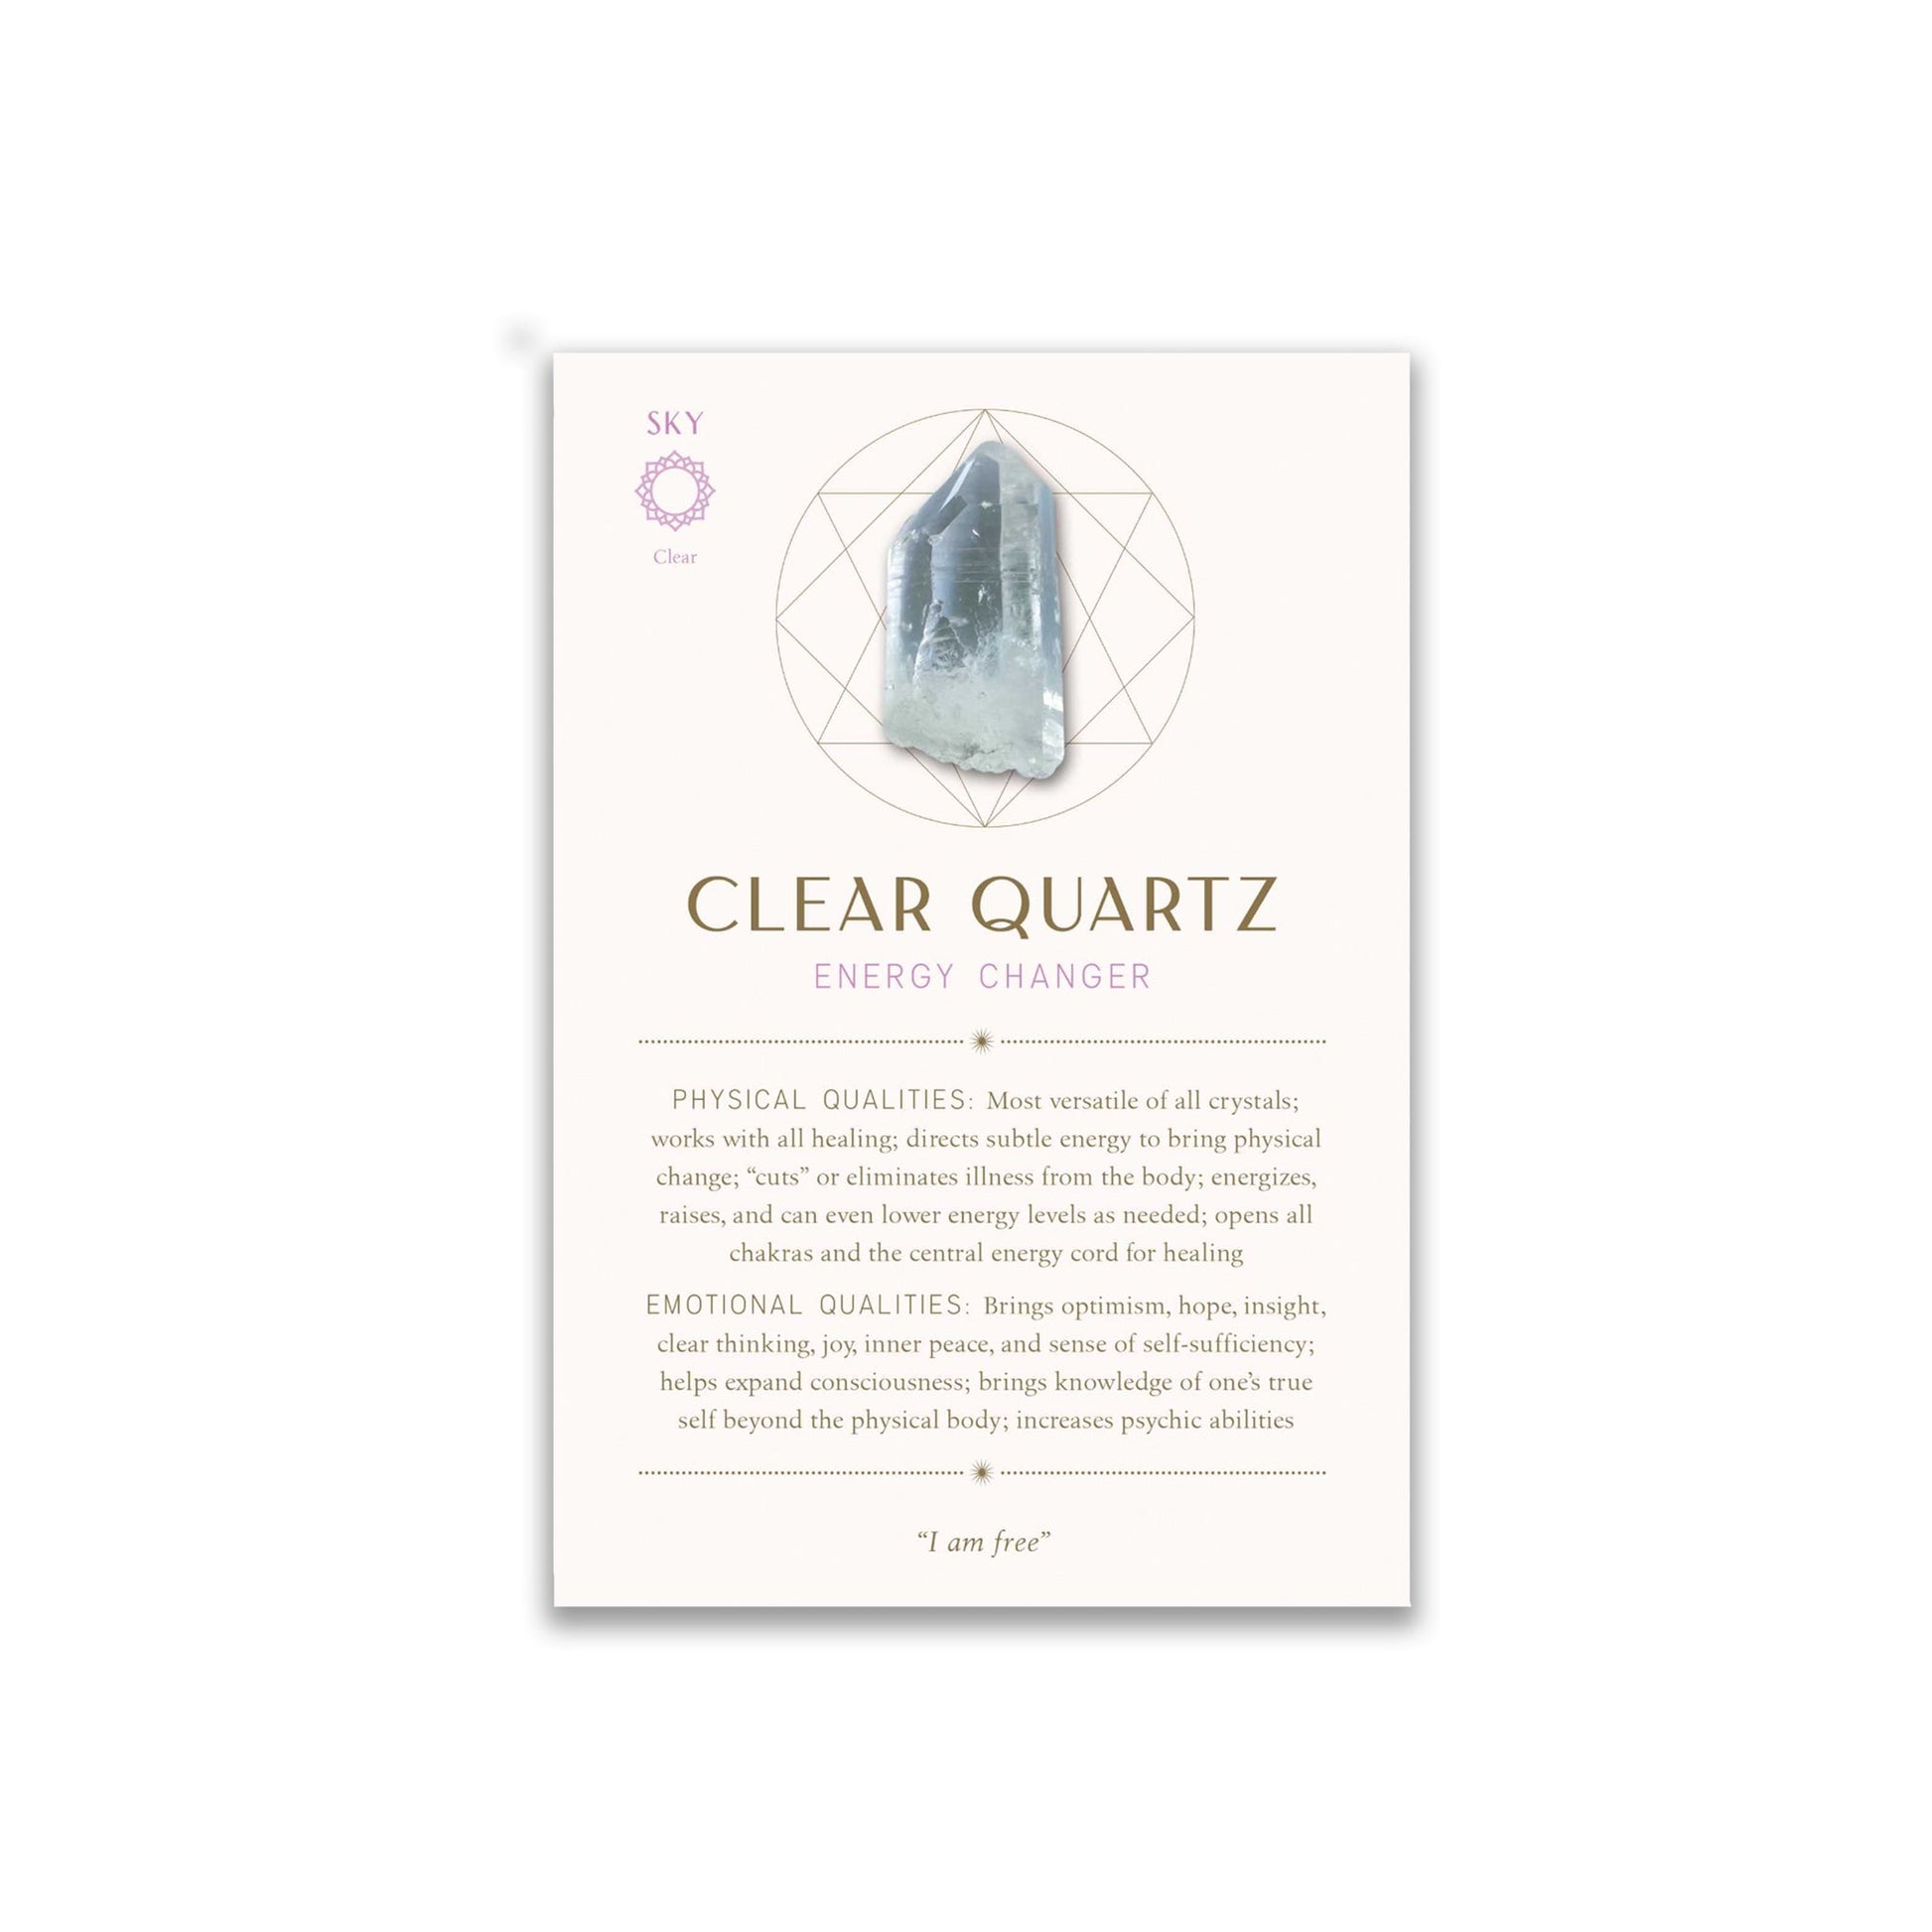 Crystal Healing Card Deck & Guidebook - Muse + Moonstone